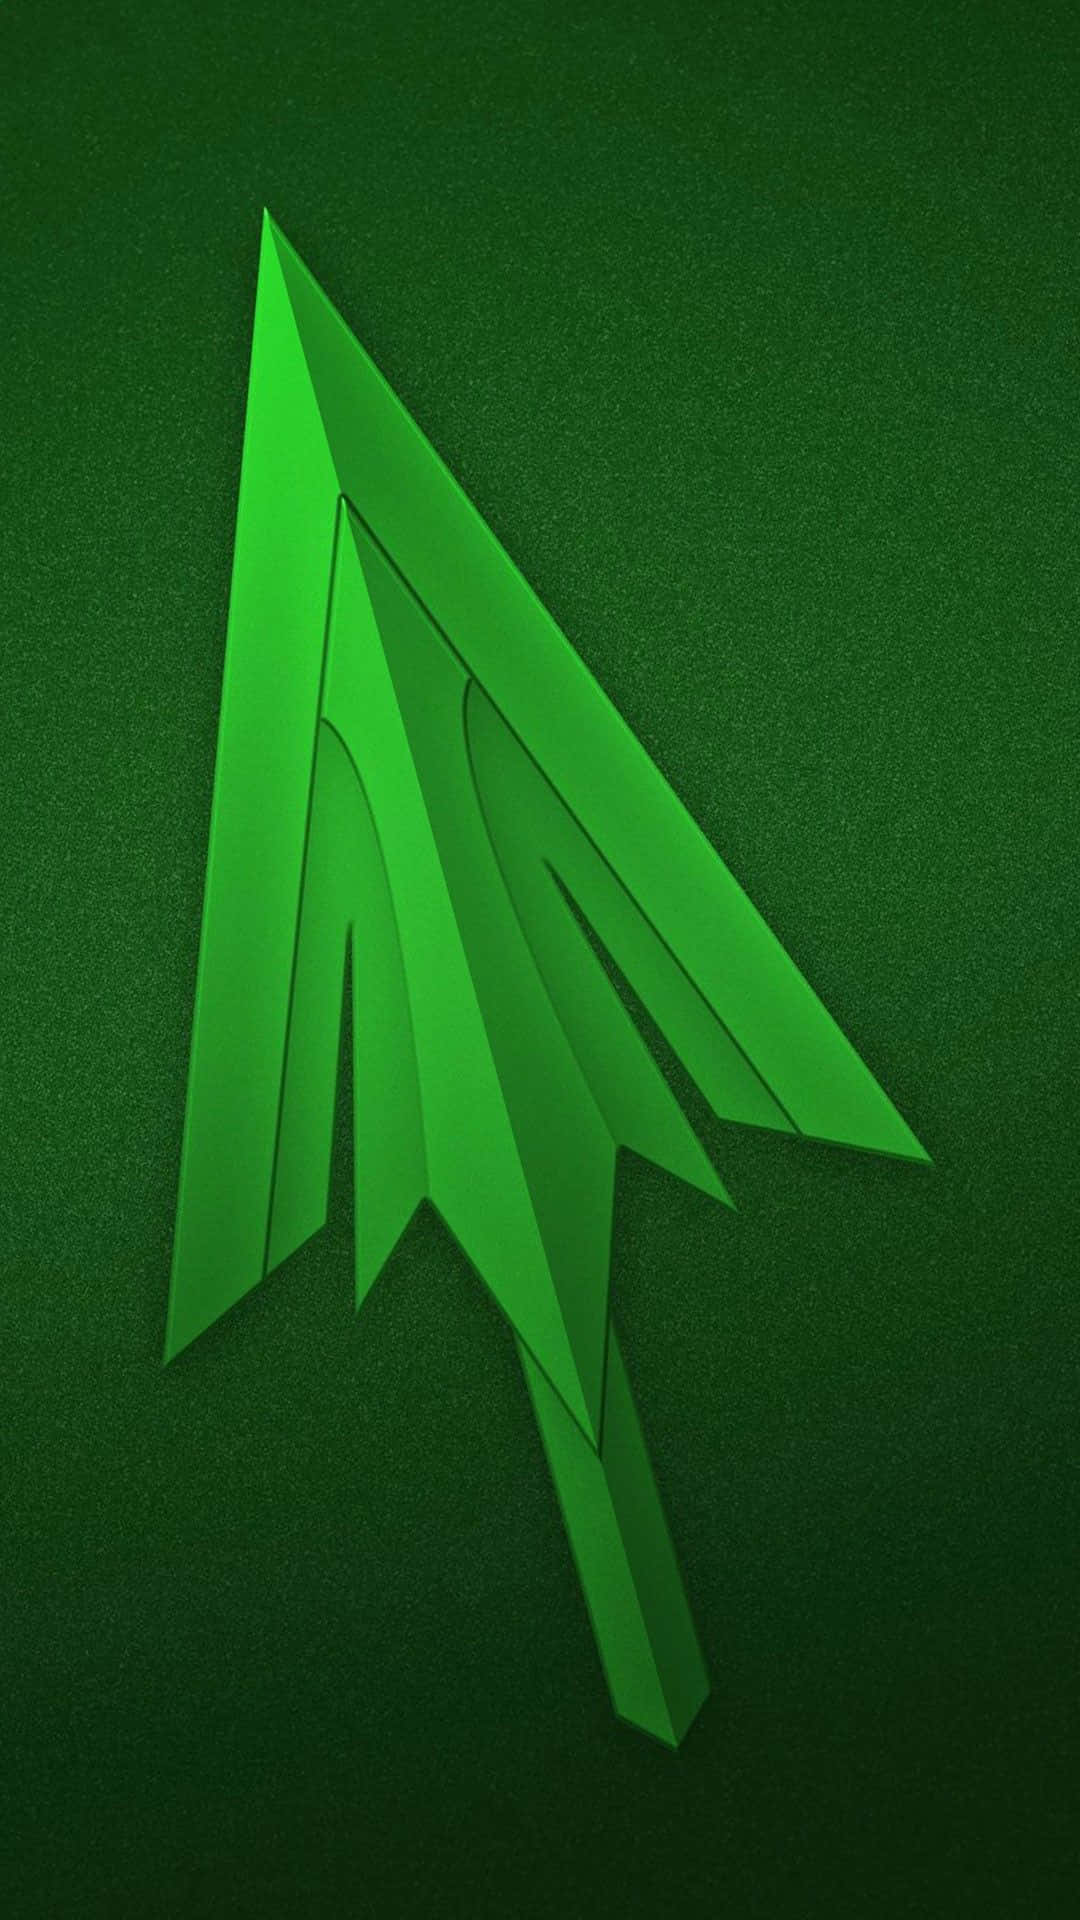 Erlebensie Eine Pixelgenaue Mobile Erfahrung Mit Dem Green Arrow Iphone Wallpaper